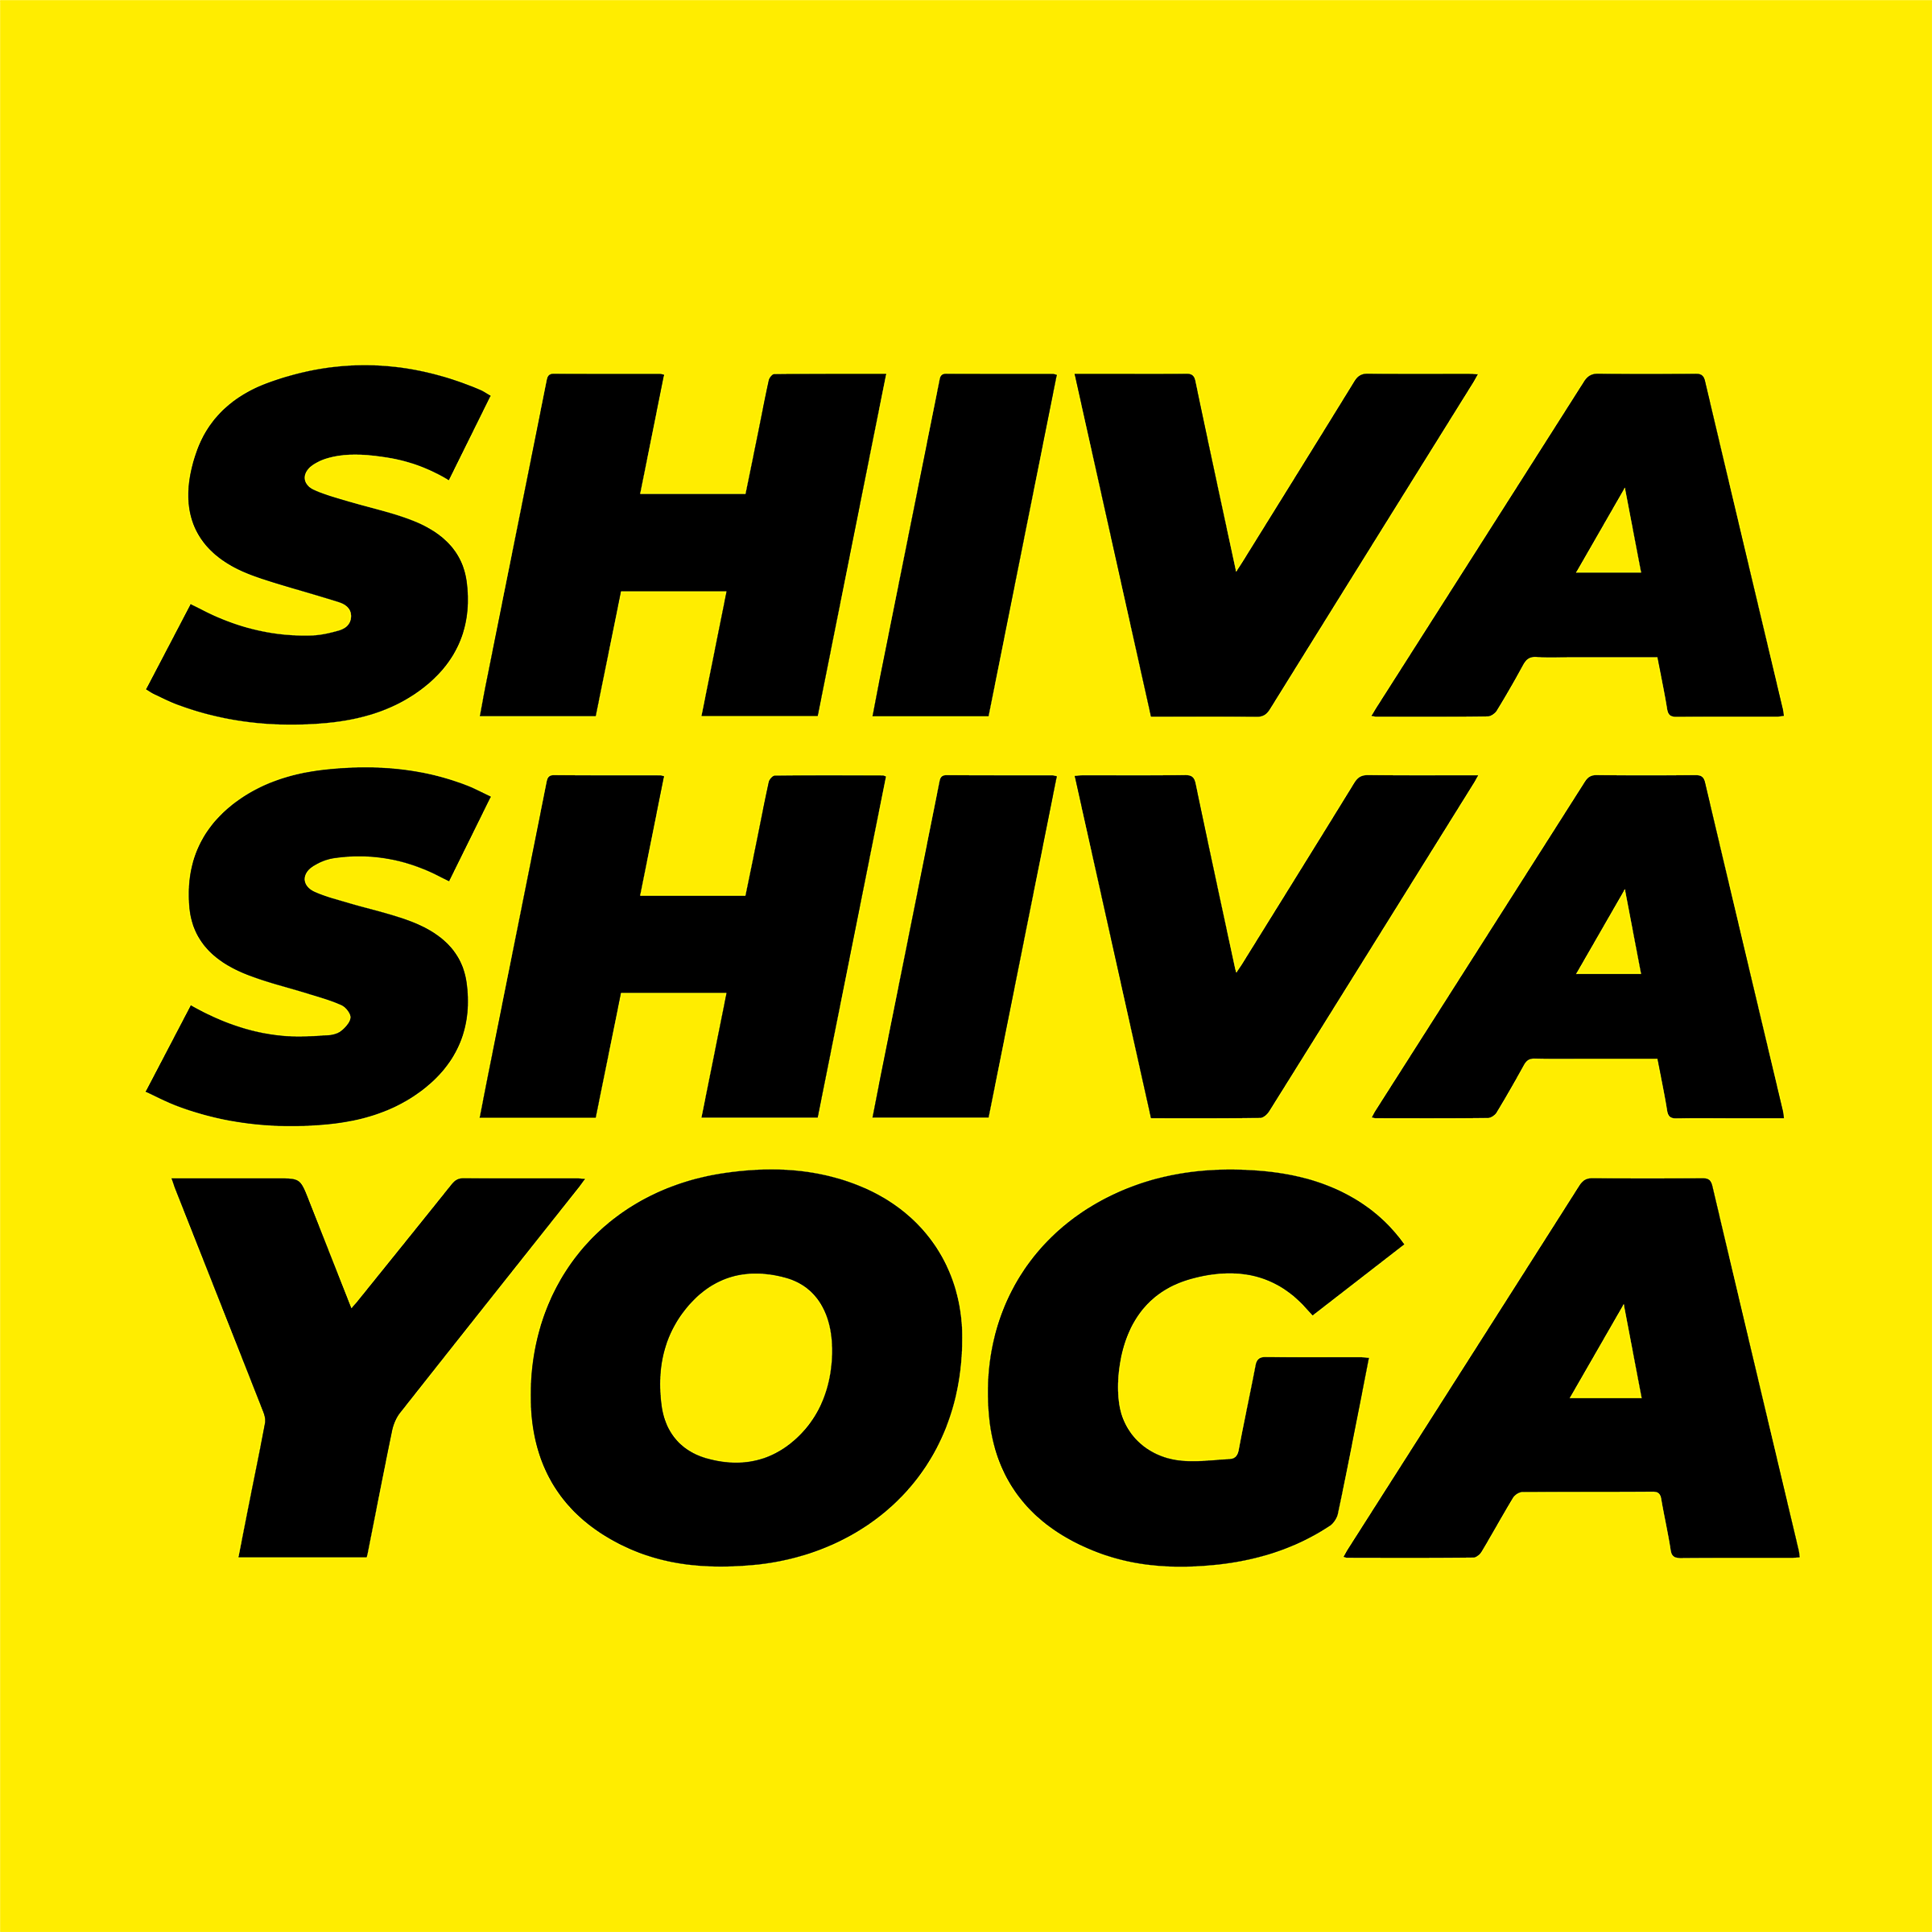 Shiva Shiva Yoga – Yogastudio in München